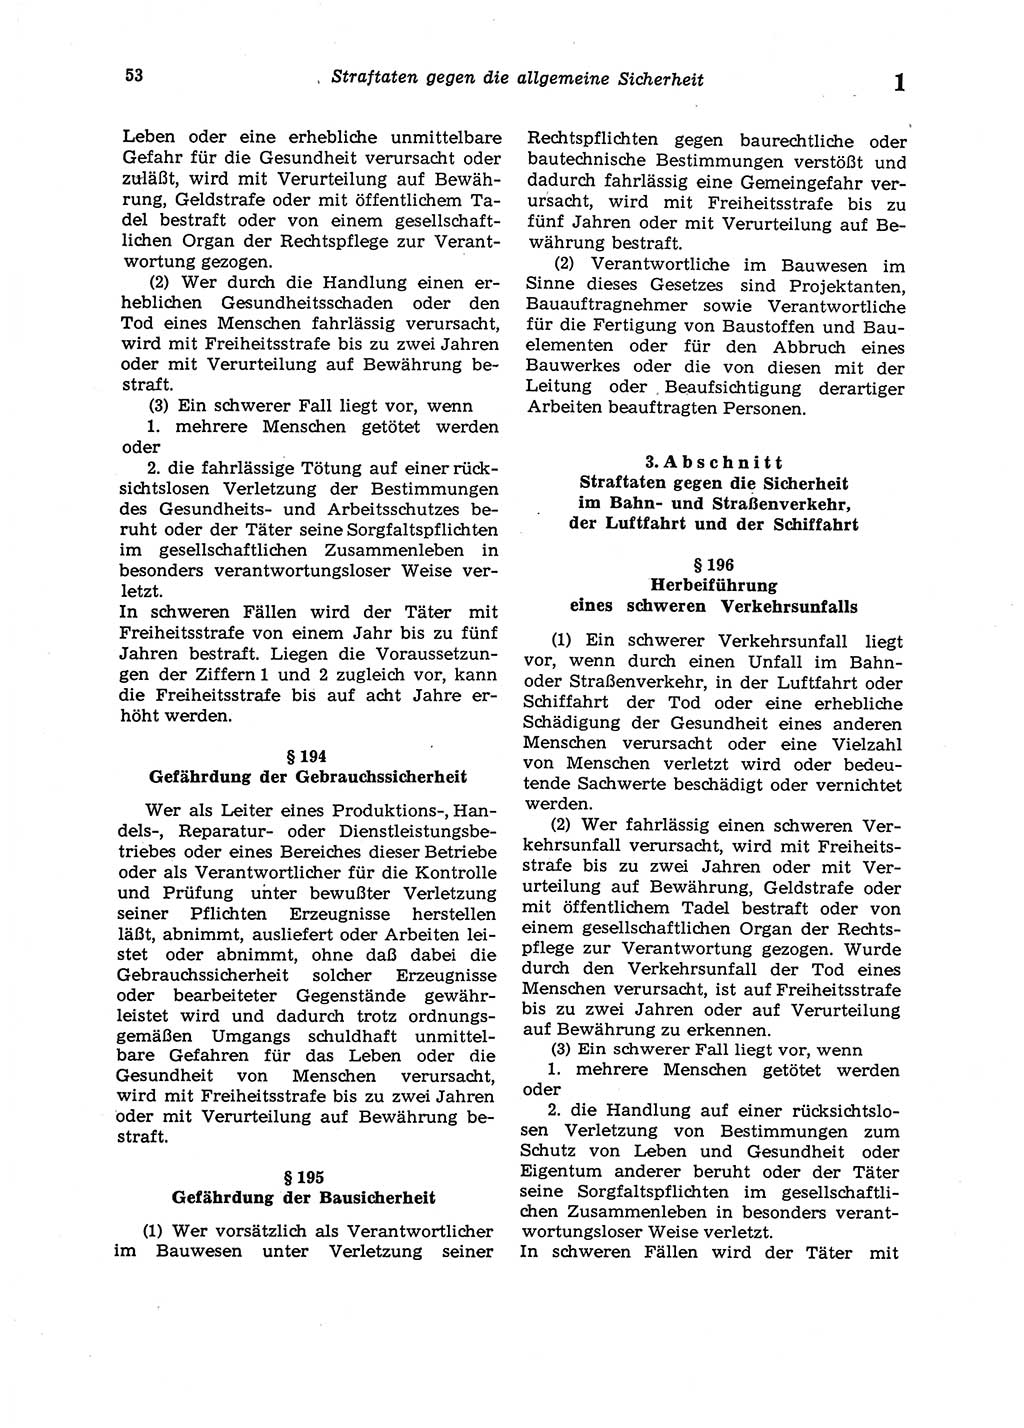 Strafgesetzbuch (StGB) der Deutschen Demokratischen Republik (DDR) 1987, Seite 53 (StGB DDR 1987, S. 53)